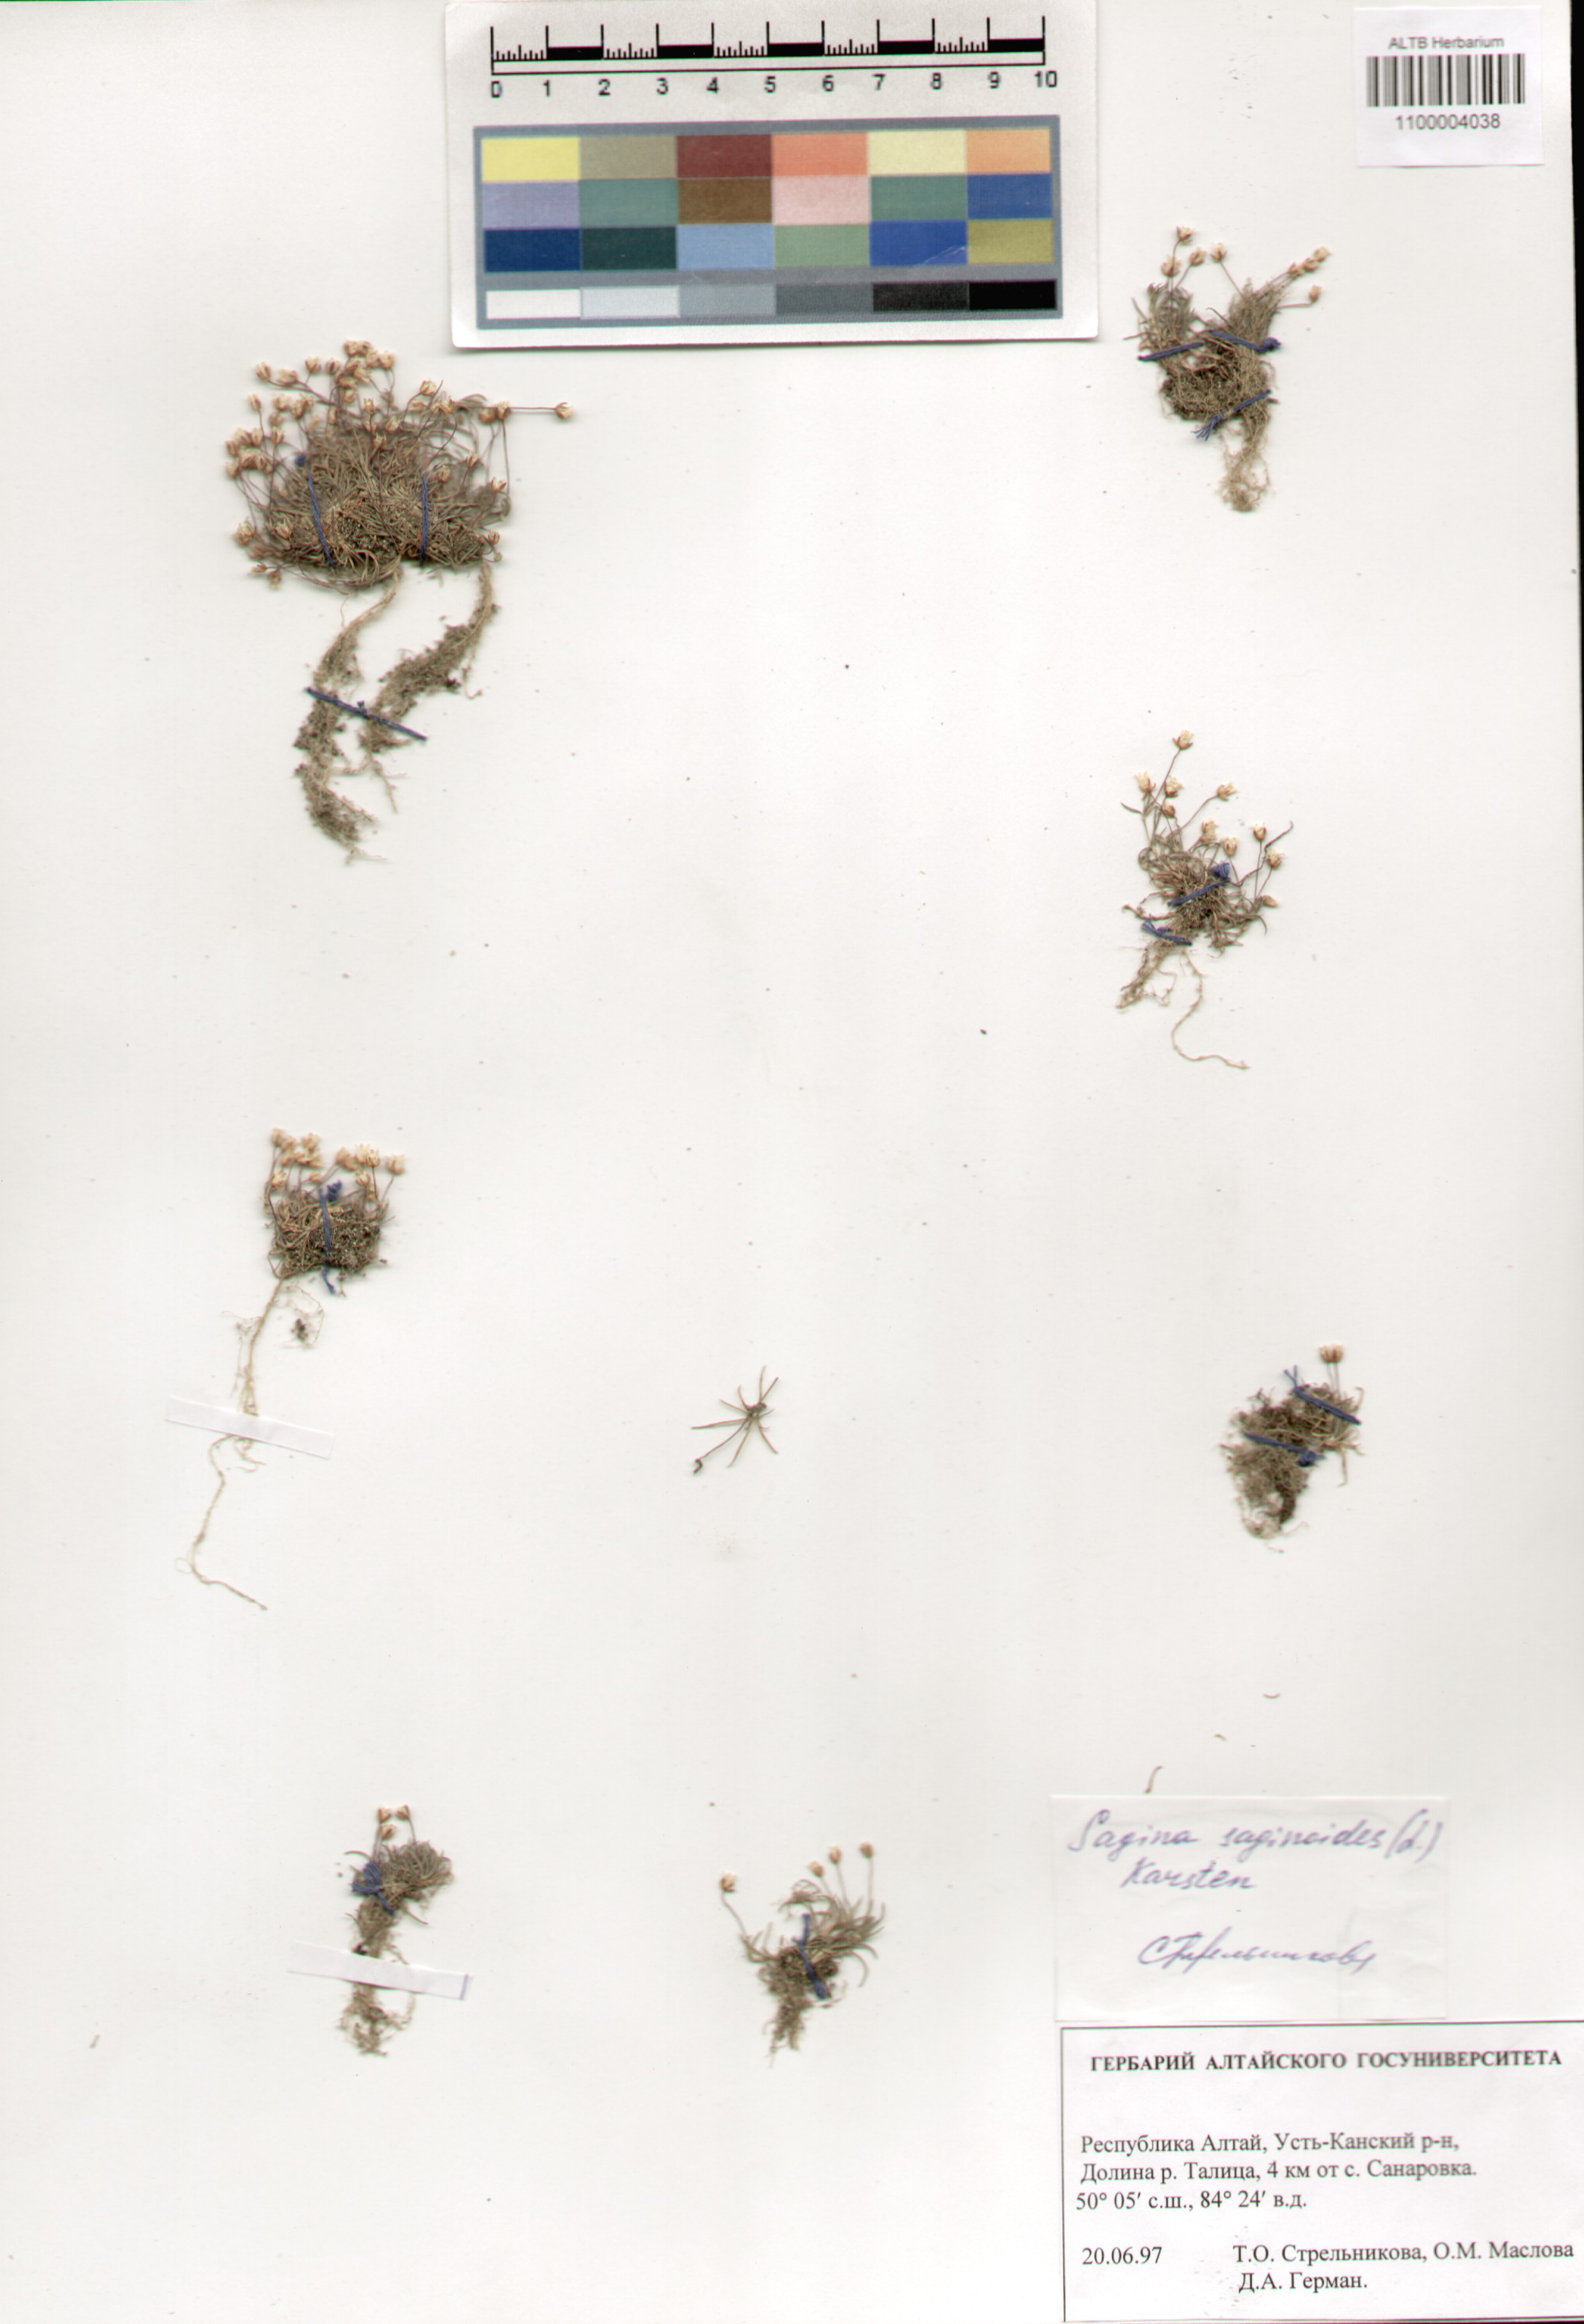 Caryophyllaceae,Sagina saginoides (L.) Karst